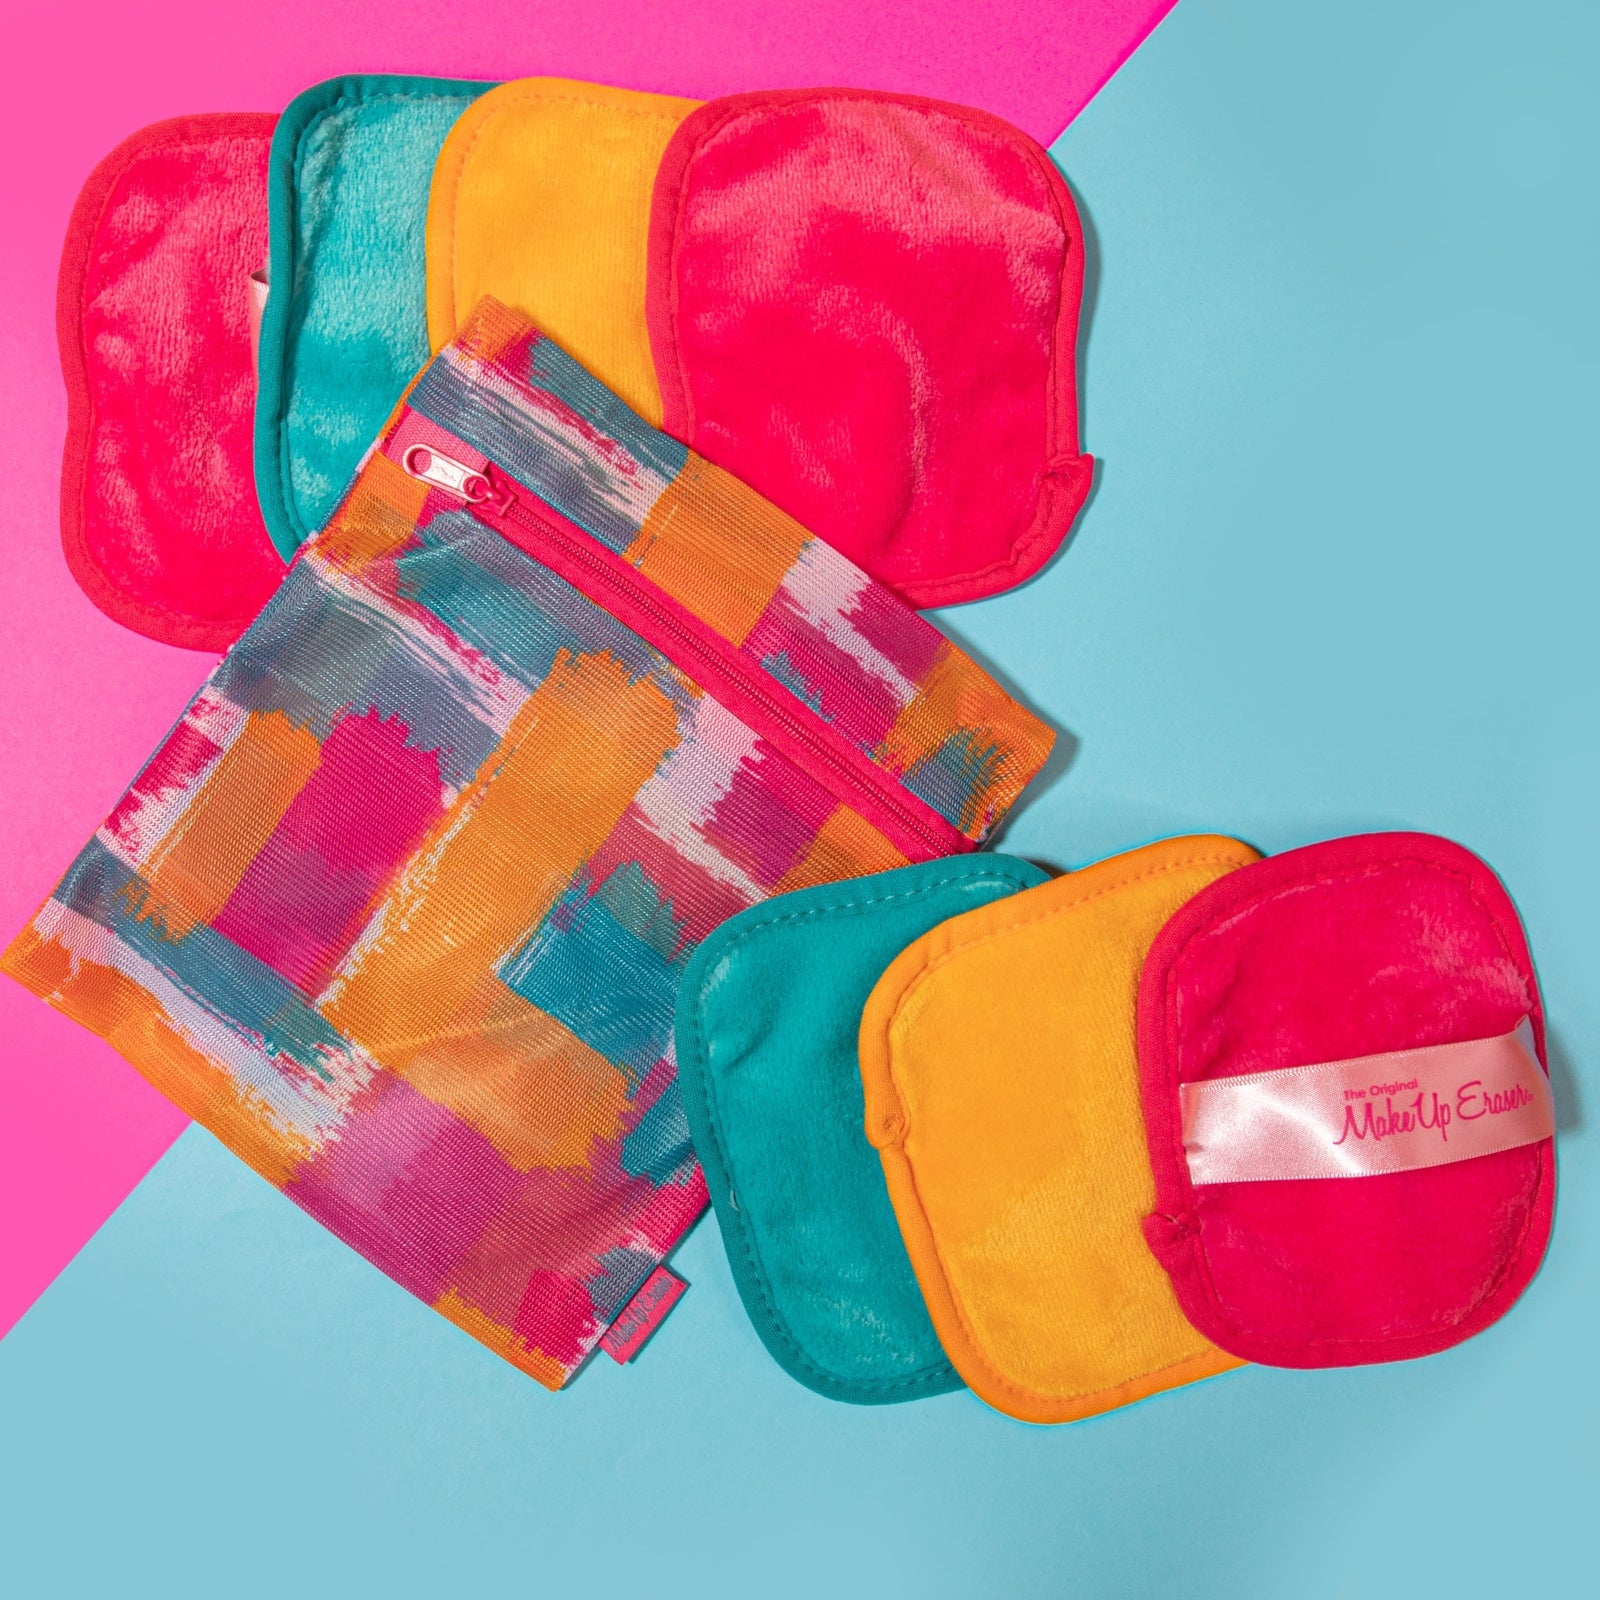 The Original Makeup Eraser Splash of Color 7-Day Set